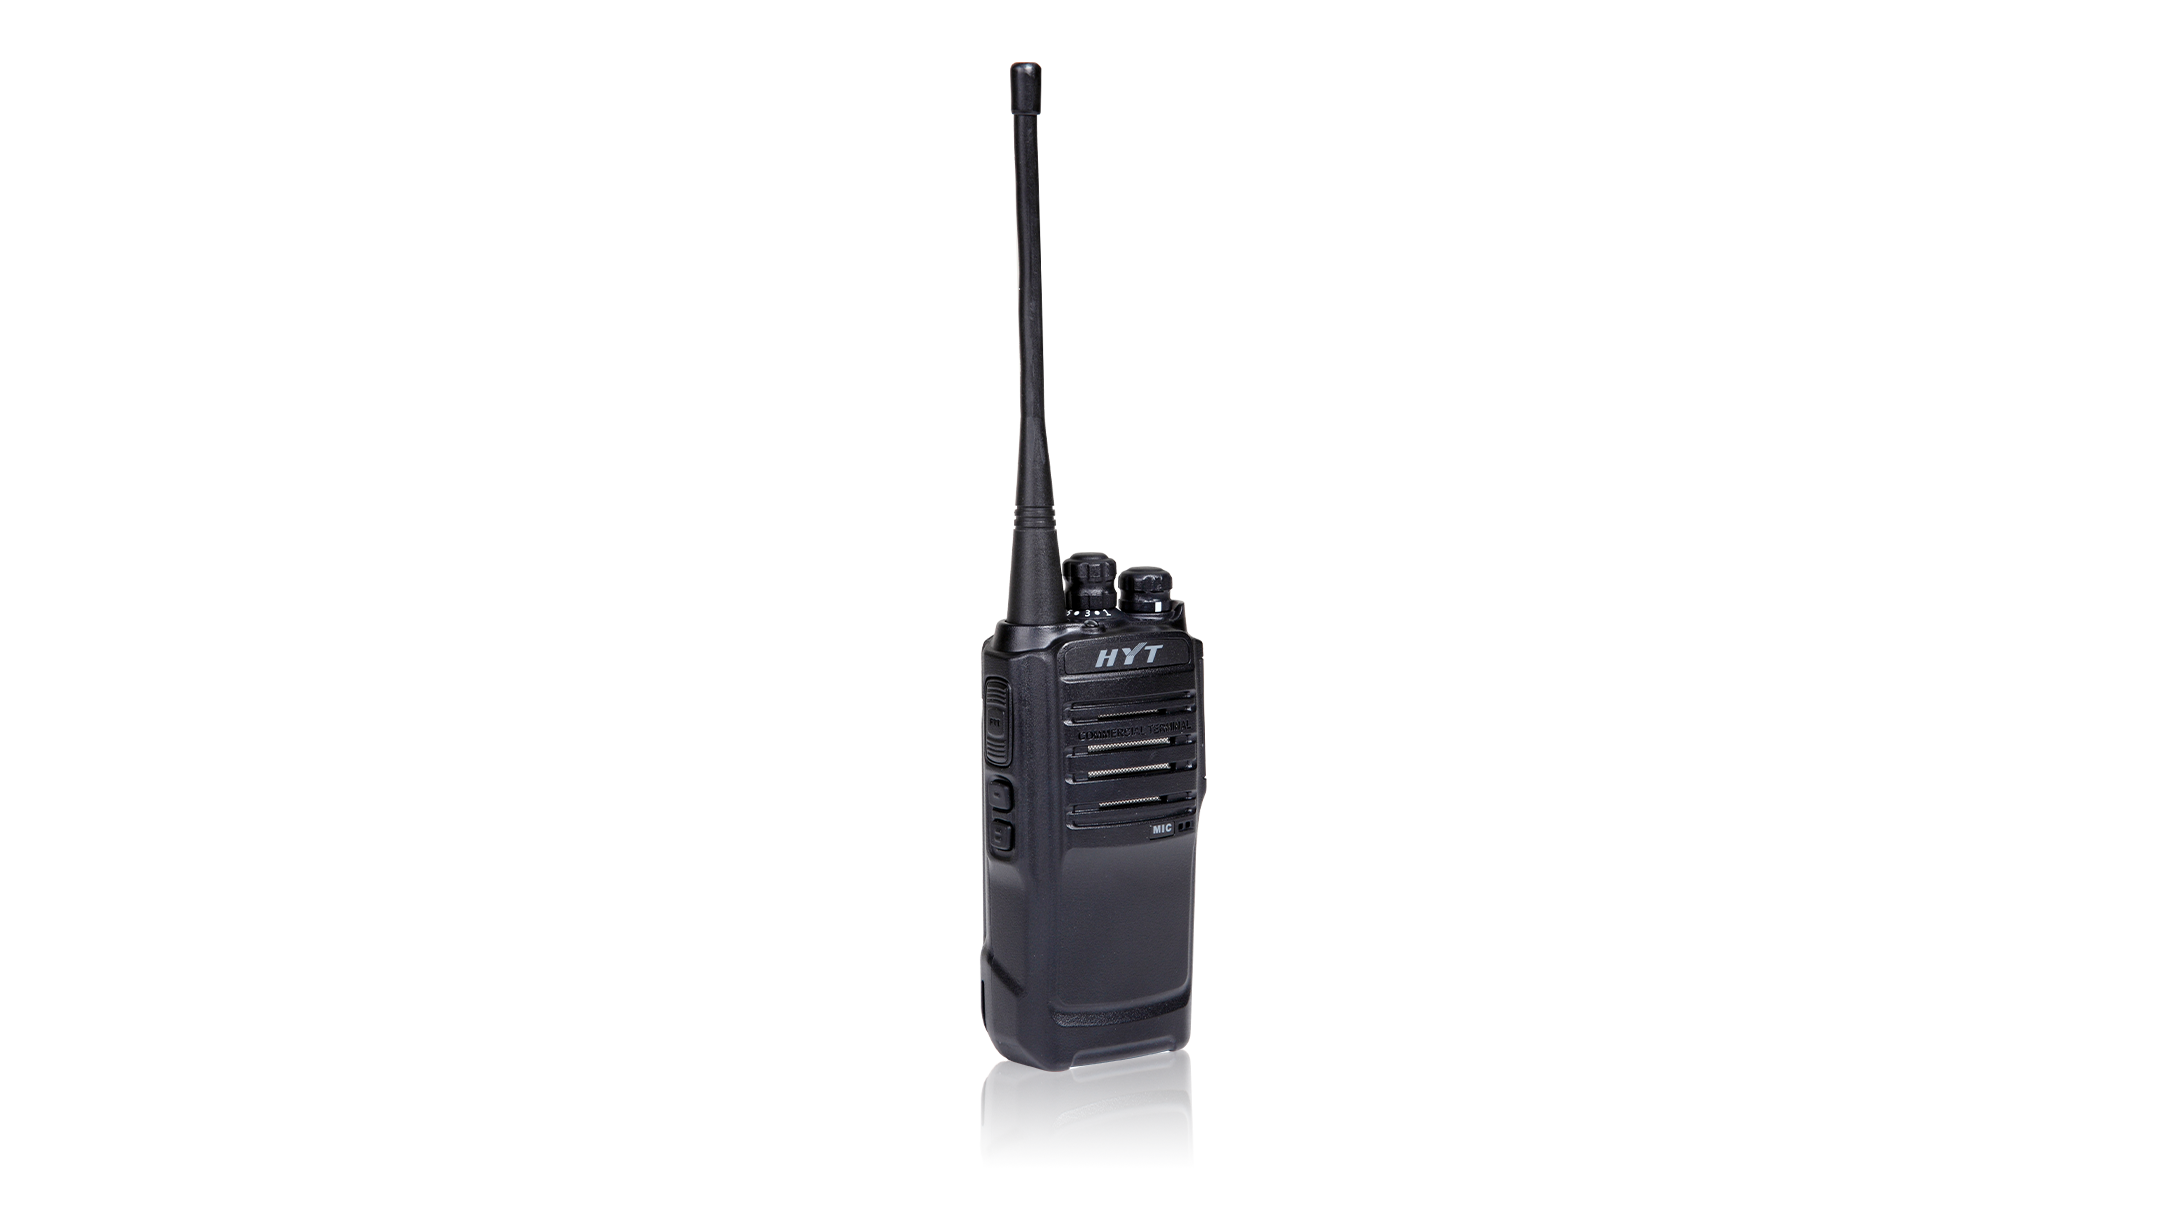 HYTERA TC508 VHF 136-174MHz(RDA)<br />
<br />
Radio de dos vías analógico HYT TC508 garantiza una ergonomía superior y un gran rendimiento en cualquier condición gracias a la prueba ALT de 5 años de HYT. Además, el radio HYT trabaja hasta 14 horas y ofrece 16 canales de comunicación.